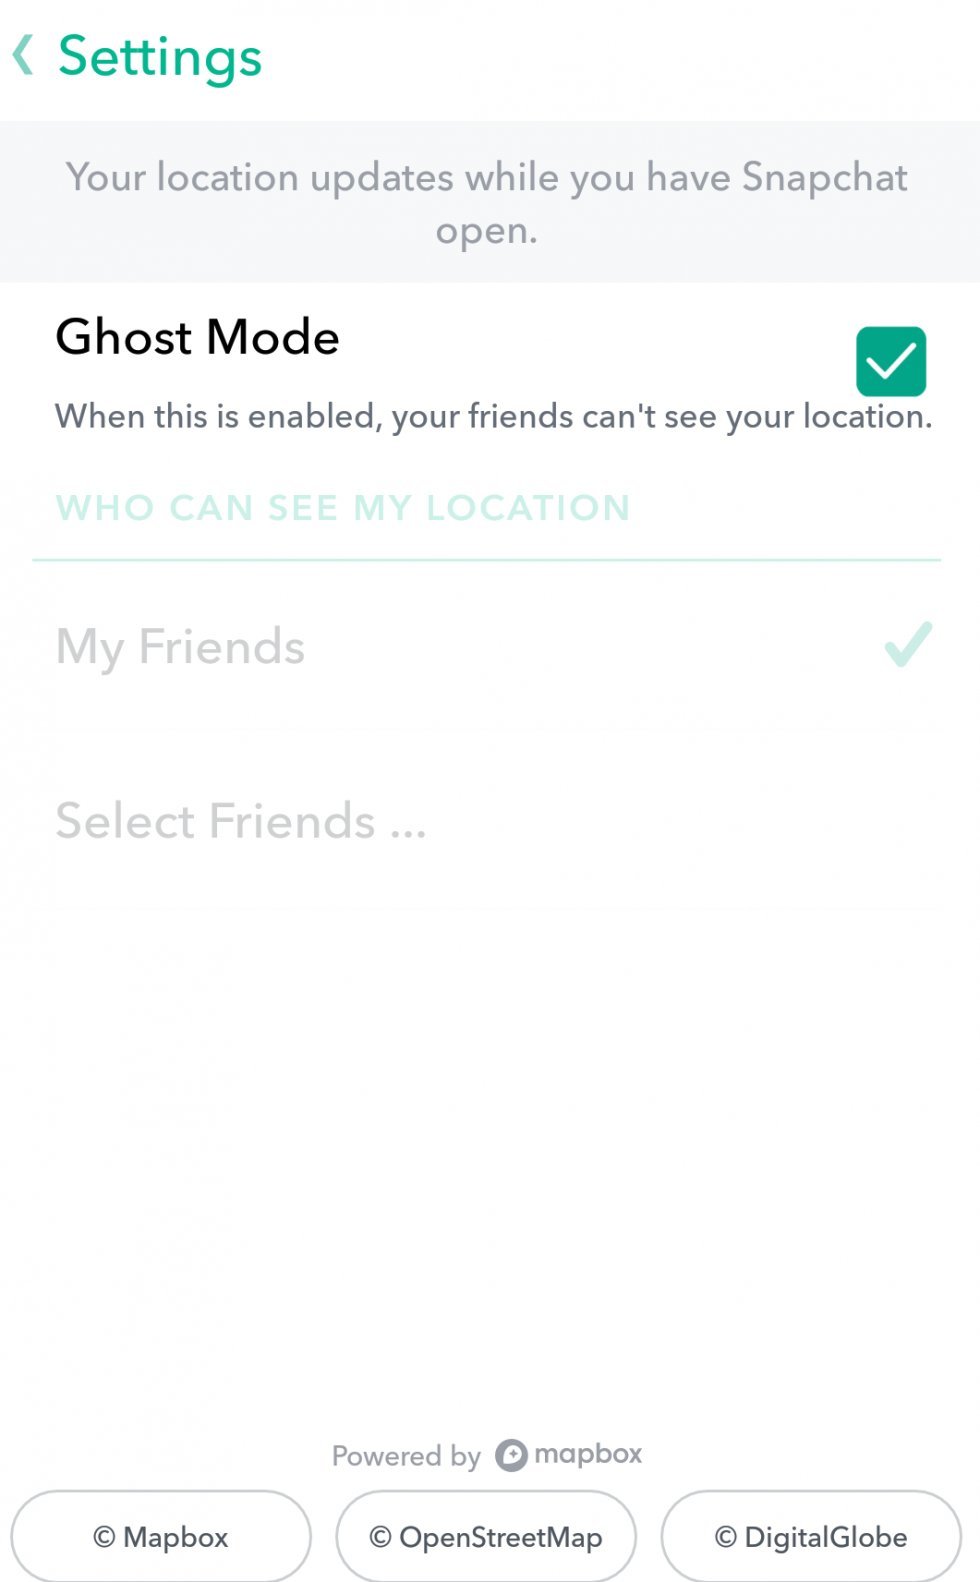 Snapchats seneste opdatering kan potentielt afsløre utroskaber og uheldige snapstories